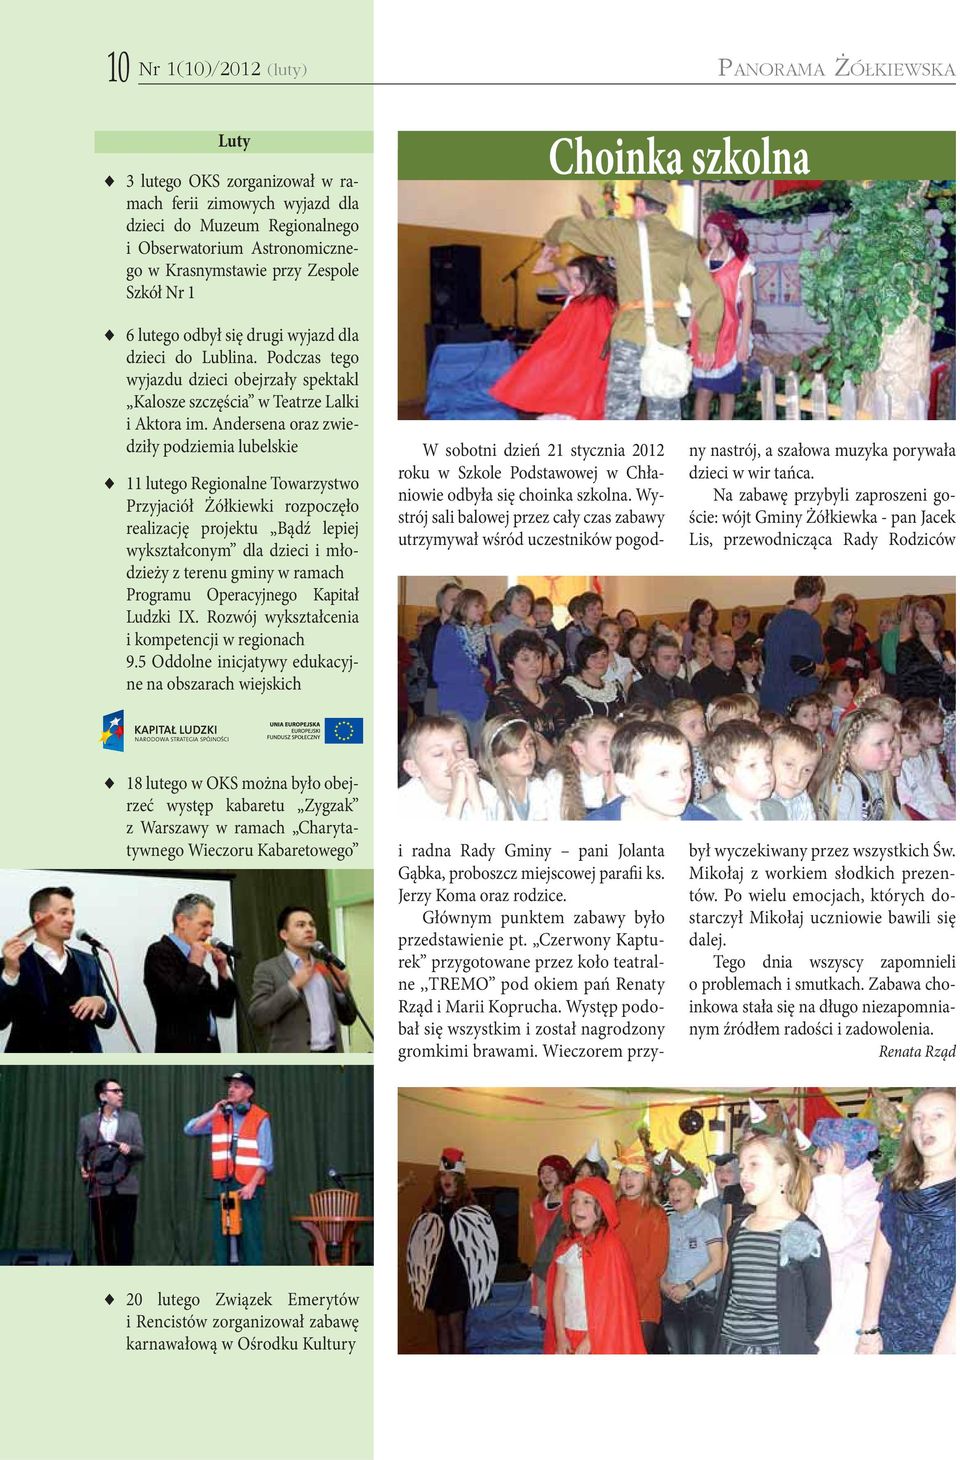 Andersena oraz zwiedziły podziemia lubelskie 11 lutego Regionalne Towarzystwo Przyjaciół Żółkiewki rozpoczęło realizację projektu Bądź lepiej wykształconym dla dzieci i młodzieży z terenu gminy w